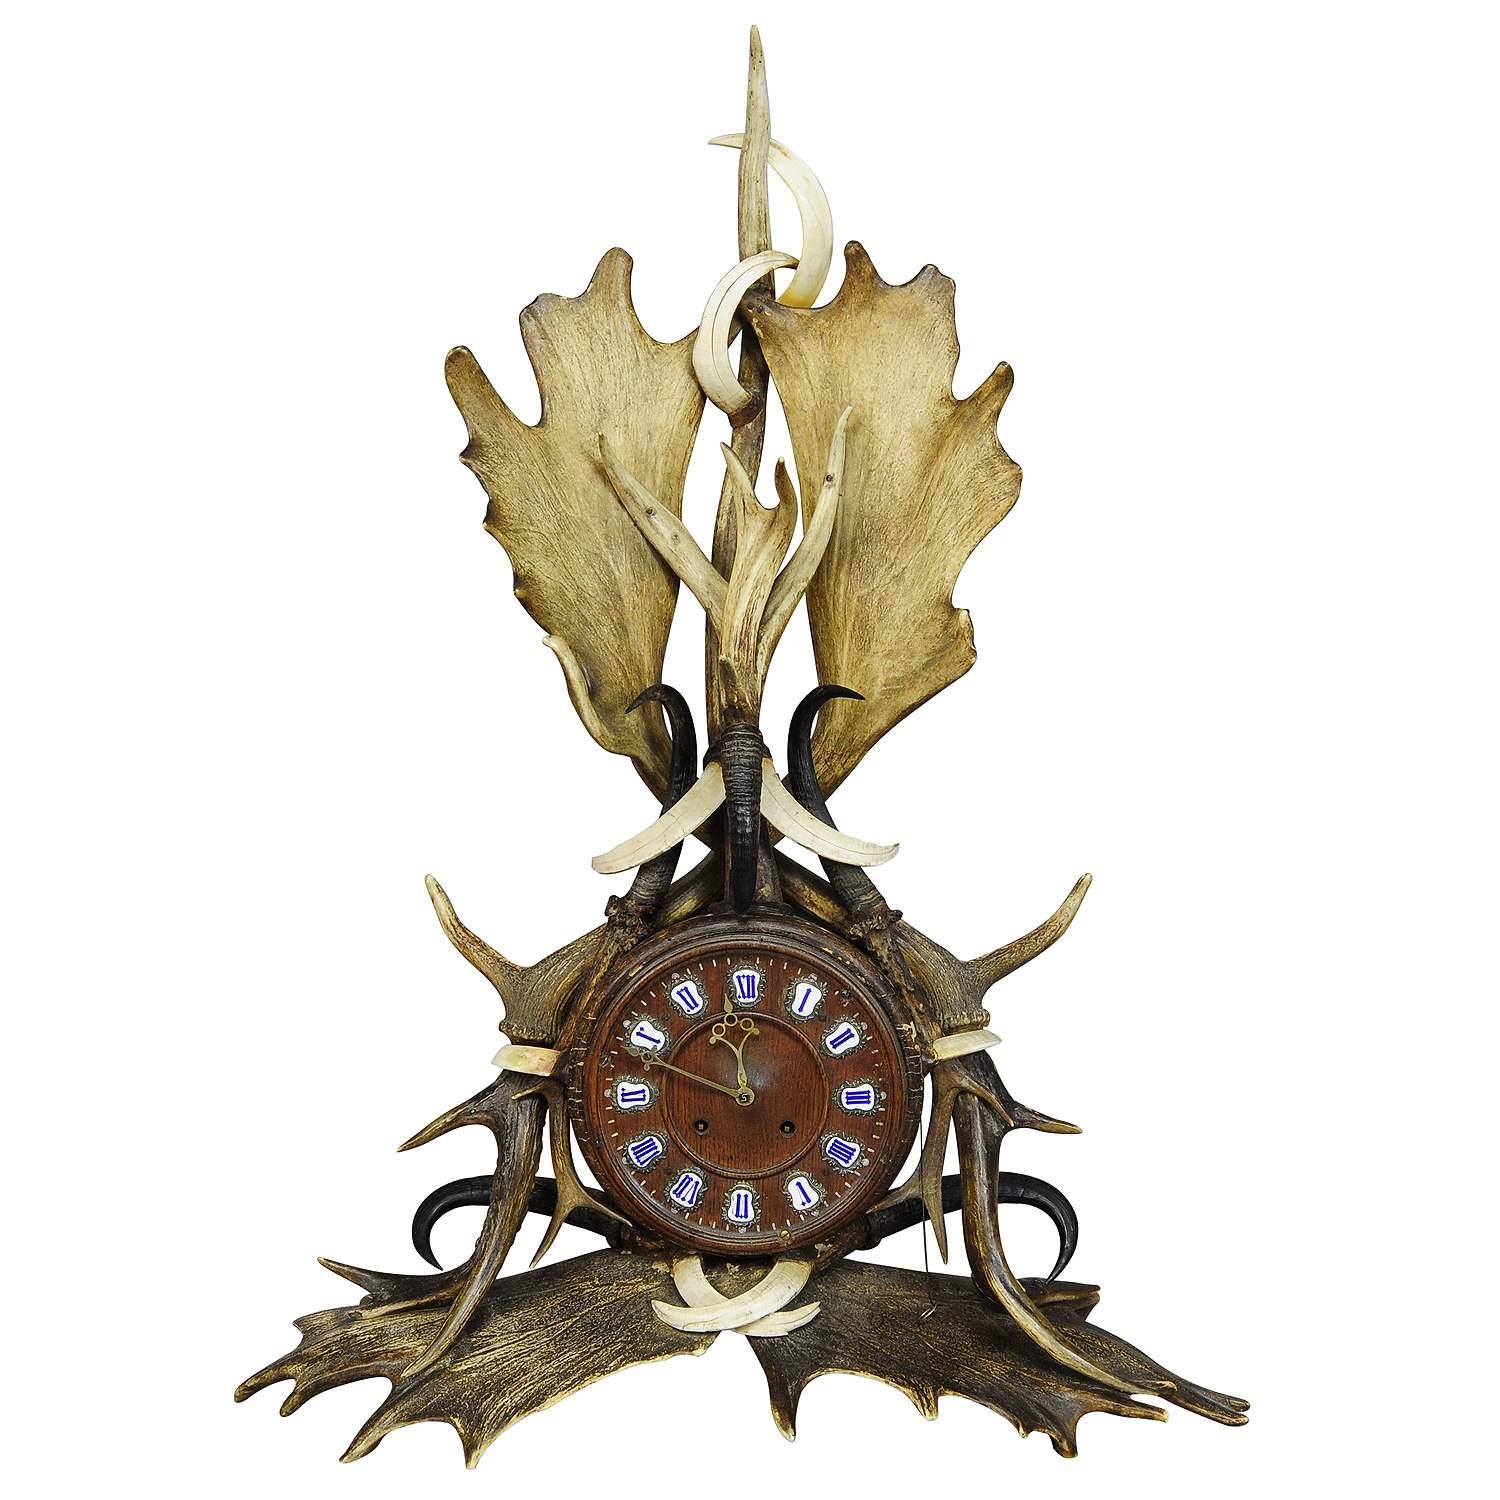 Great Lodge Style Antler Mantel Uhr 1900

Eine seltene antike Kaminsimsuhr im Lodge-Stil. Eichenholzkoffer, reich verziert mit Geweihen von Hirsch und Damhirsch, Bergziegengeweihen und Wildschweinhauern. Das 8-Tage-Uhrwerk ist funktionstüchtig und